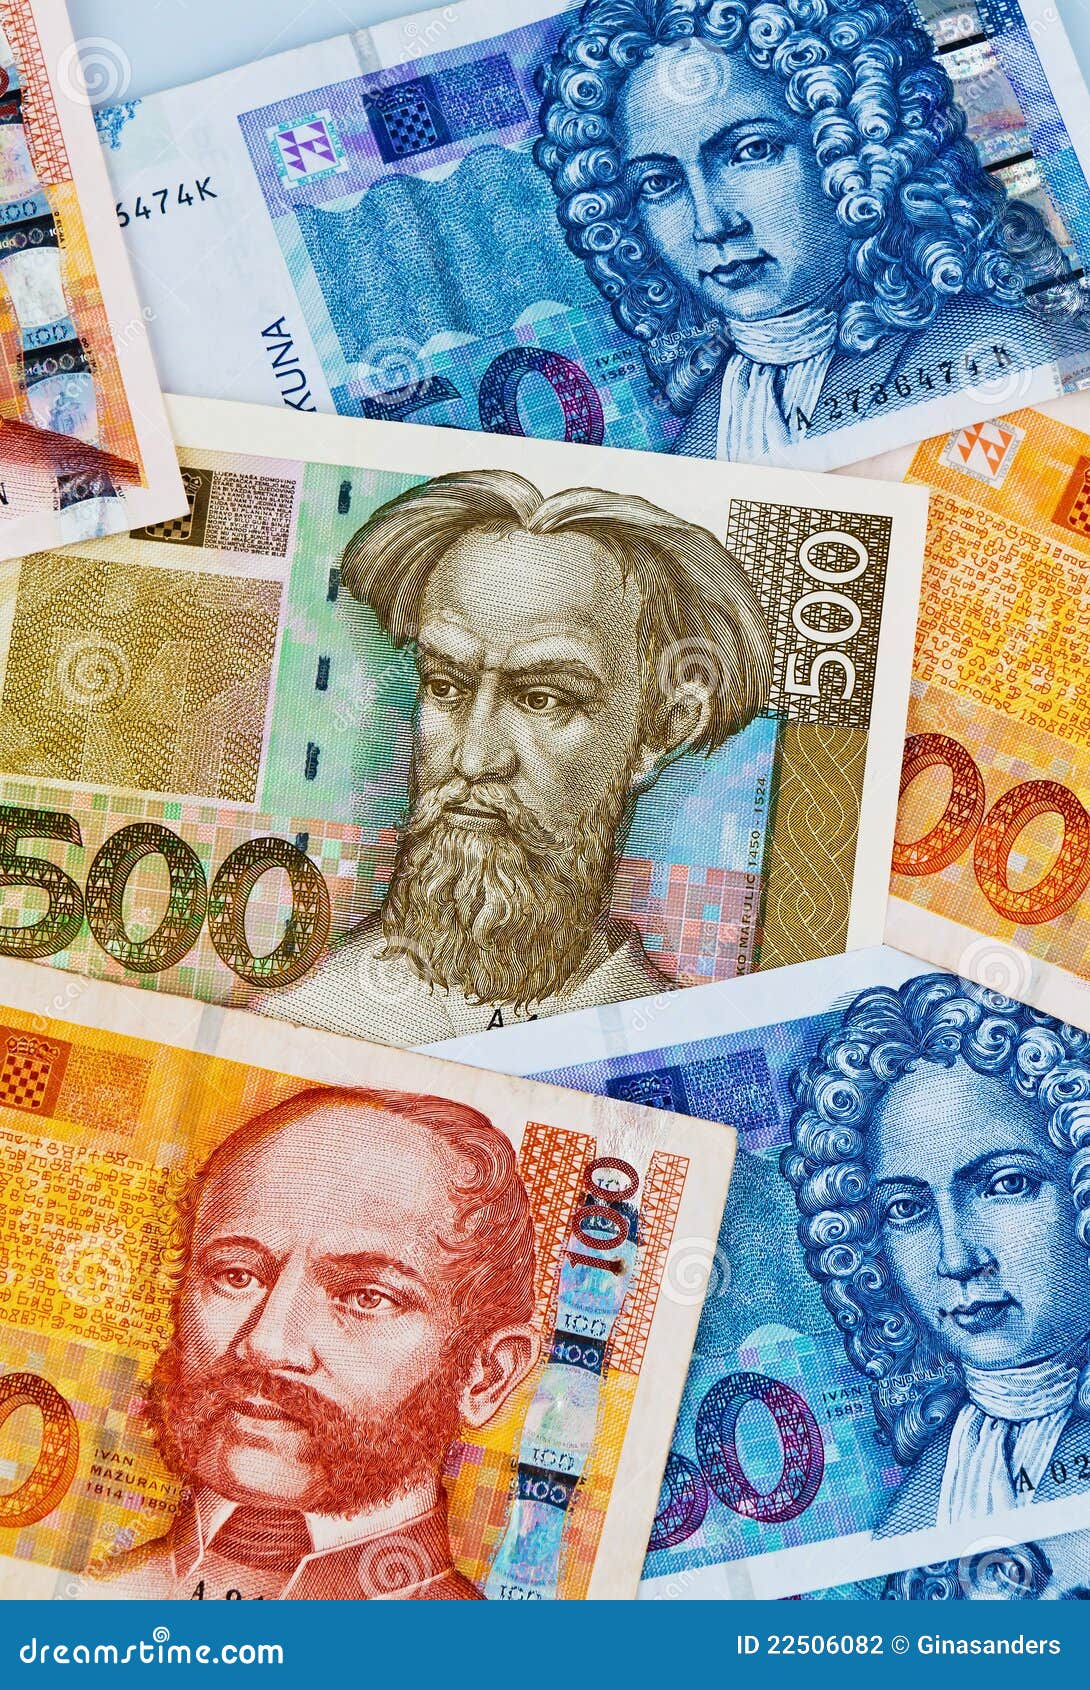 kuna - currency of croatia